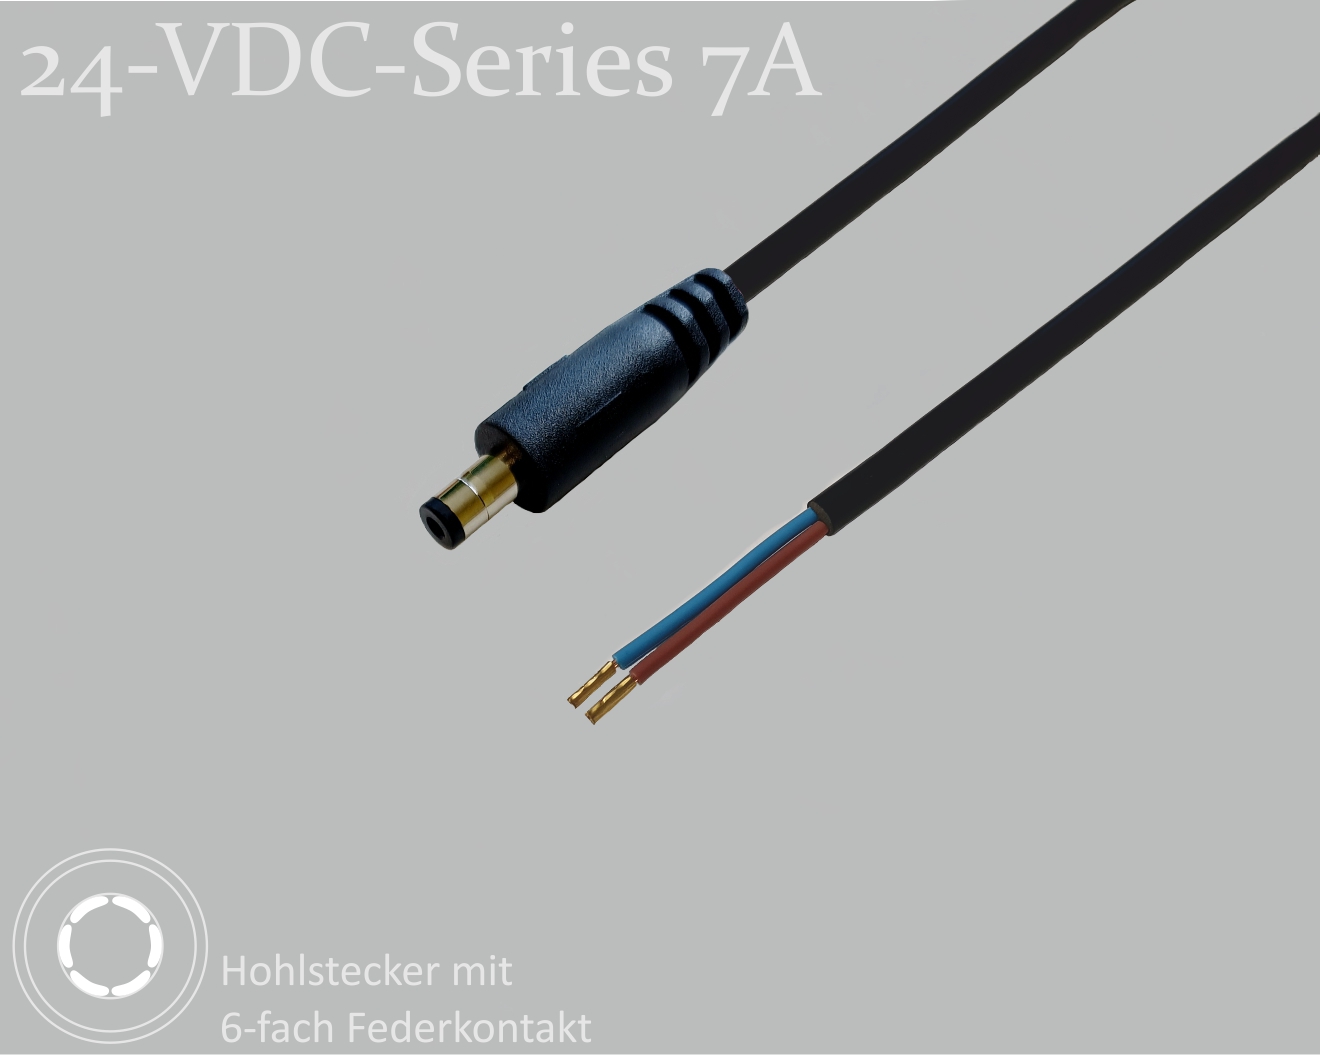 24-VDC-Series 7A, DC-Anschlusskabel, DC-Stecker mit 4-Federkontakt 2,5x5,5x9,5mm, Rundkabel 2x0,50mm², schwarz, Aderendhülsen, 0,75m